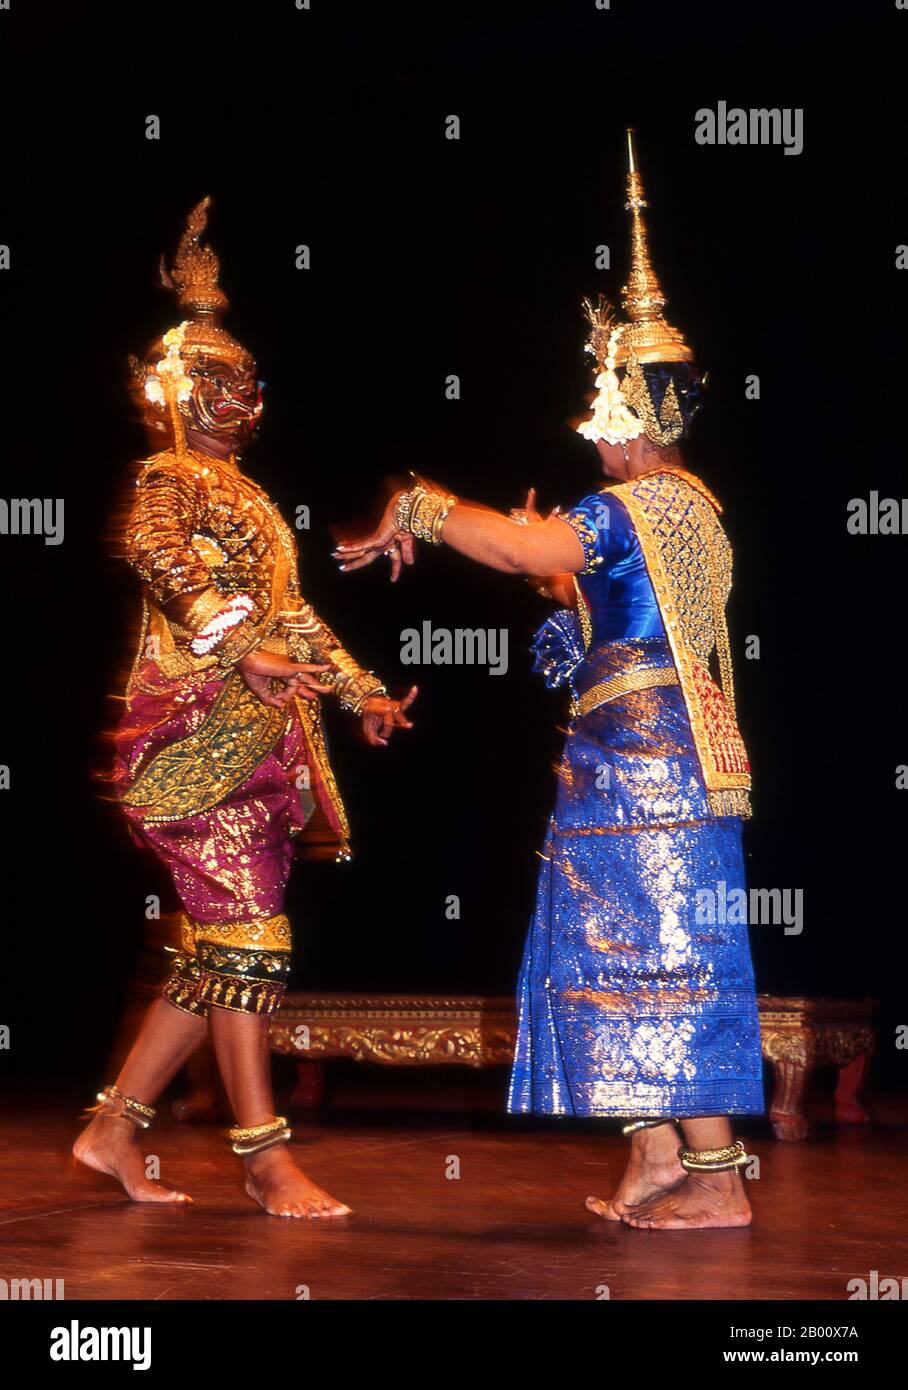 Kambodscha: Tänzer, Royal Ballet of Cambodia, Phnom Penh Khmer der klassische Tanz ähnelt den klassischen Tänzen Thailands und Kambodschas. Der Reamker ist eine Khmer-Version des Ramayana und ist eines der am häufigsten durchgeführten Tanzdramen. Stockfoto